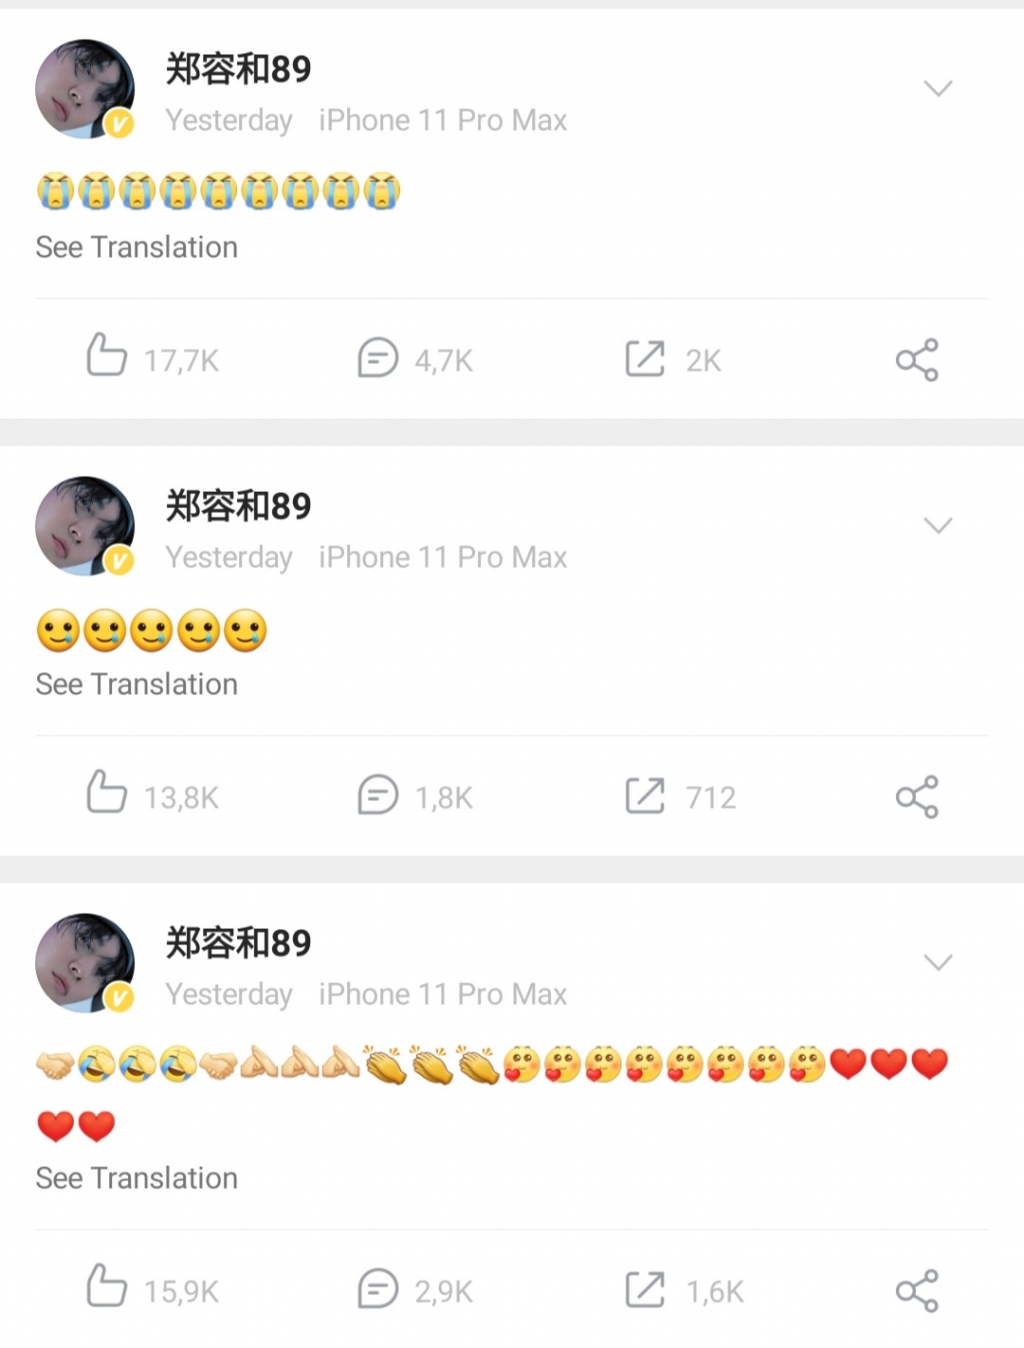 Sao Hàn đồng loạt đăng Weibo, lệnh hạn Hàn được nới lỏng?